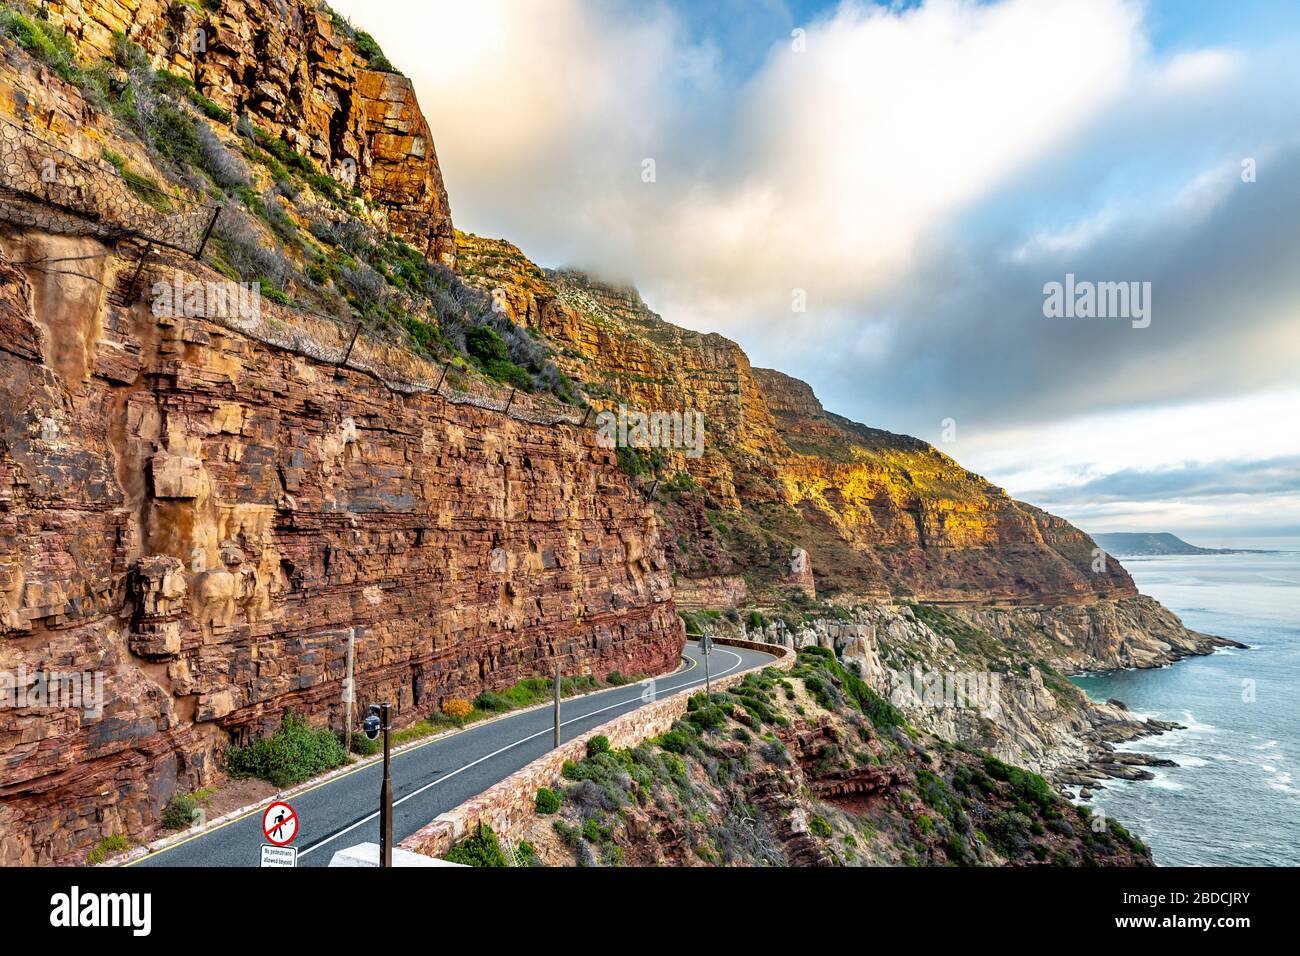 Chapman's Peak Drive in der Nähe von Kapstadt auf der Kap-Halbinsel - Westkappo, Südafrika. Stockfoto